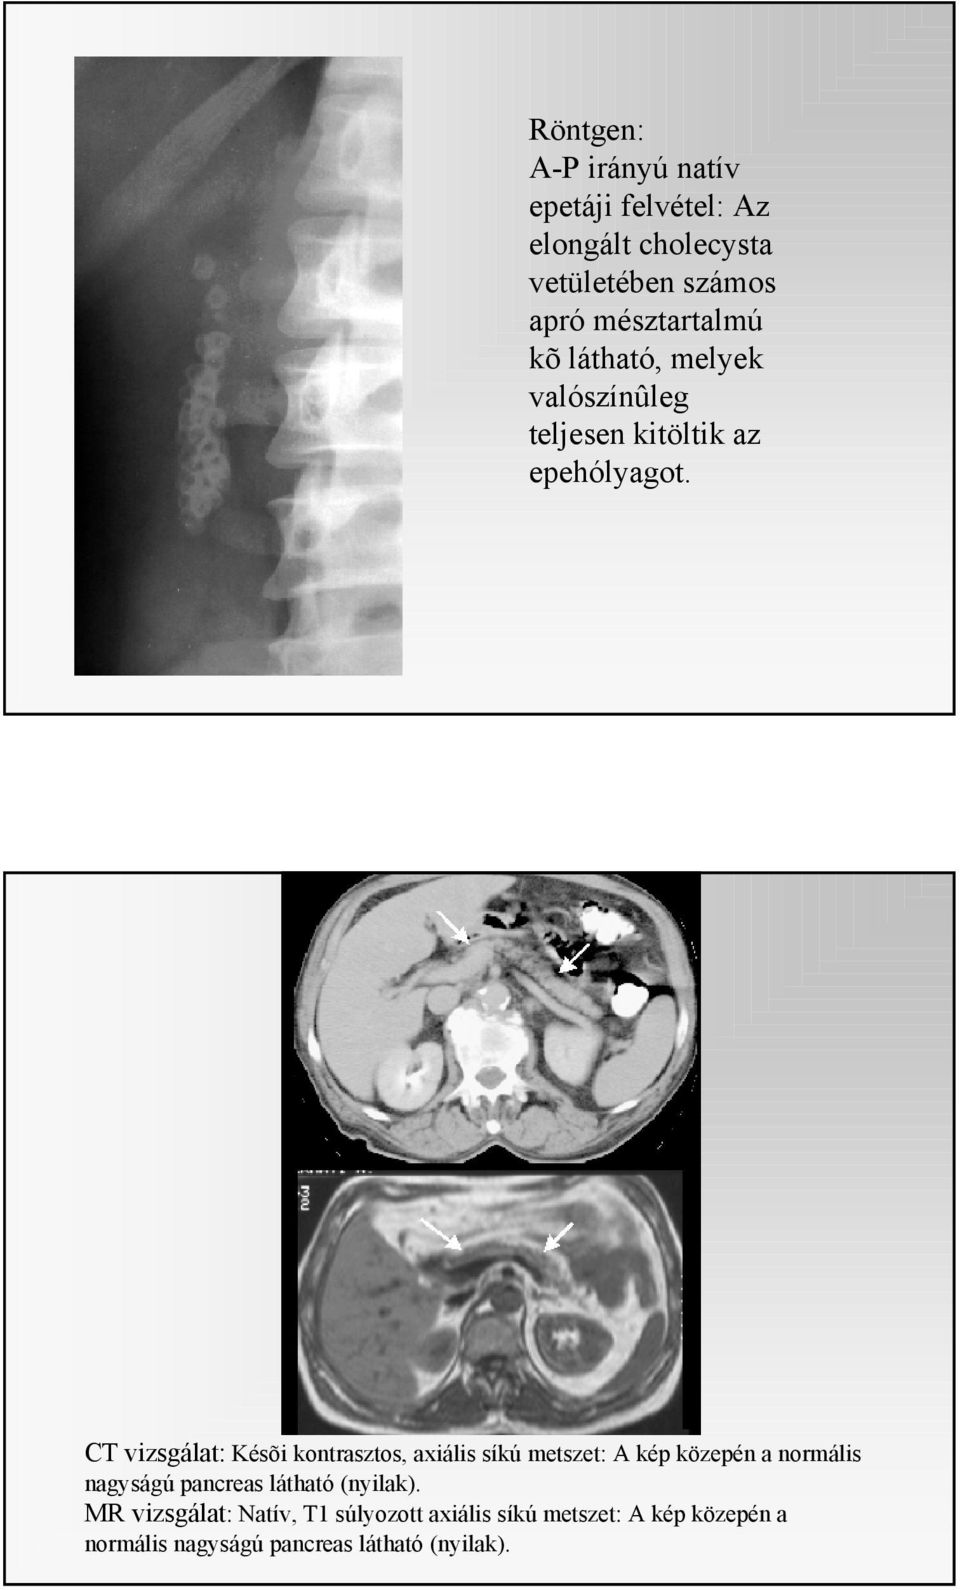 CT vizsgálat: Késõi kontrasztos, axiális síkú metszet: A kép közepén a normális nagyságú pancreas